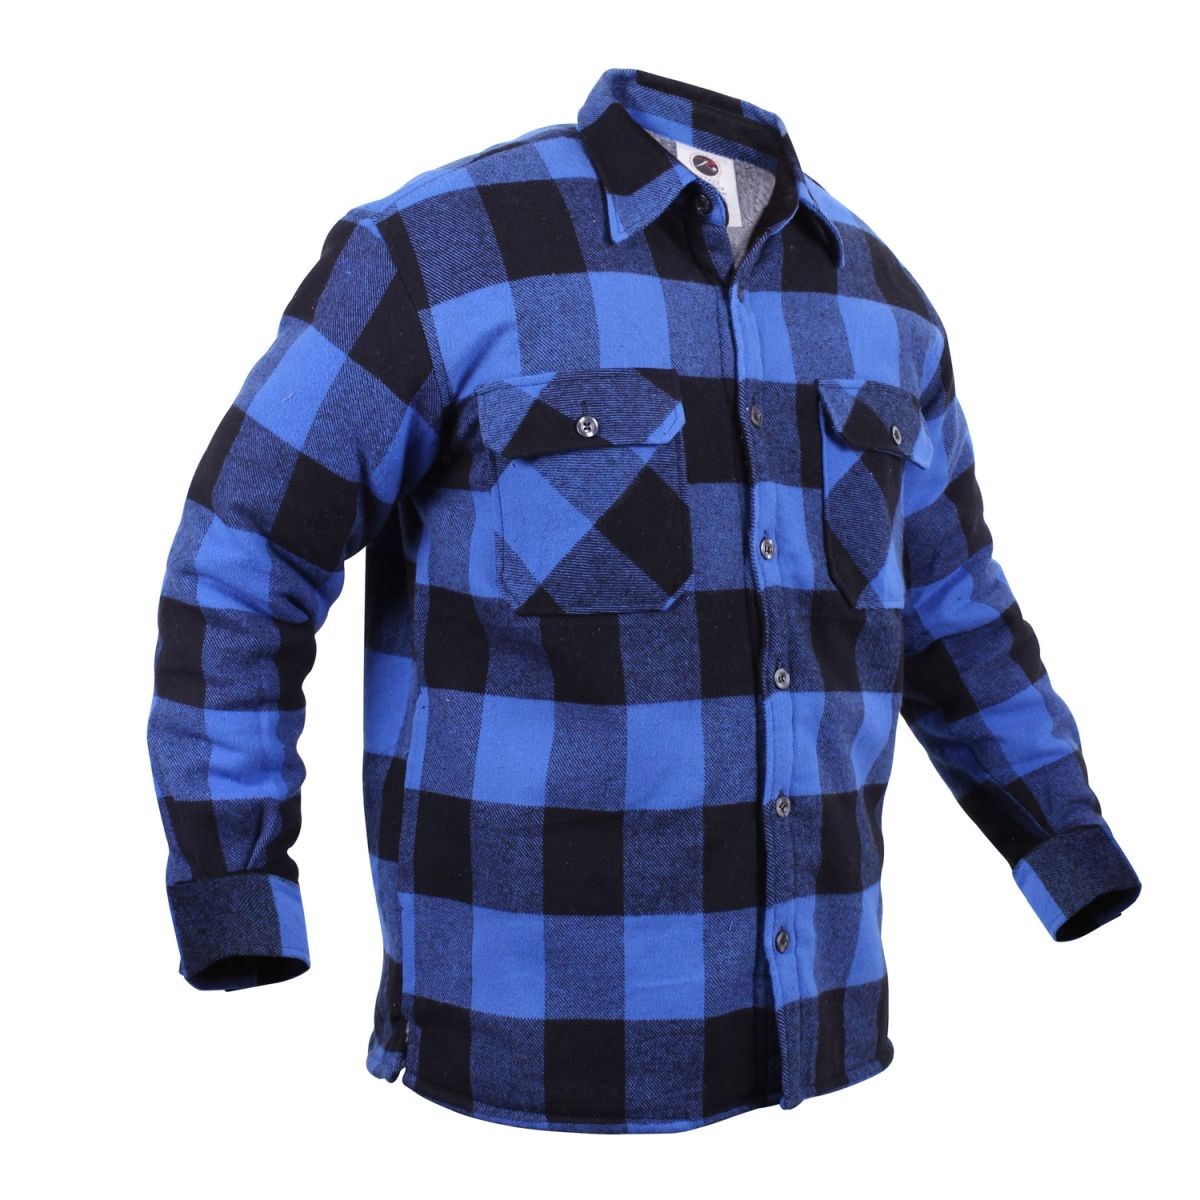 Lumberjack warm plaid shirt BLUE ROTHCO 3739BLU L-11